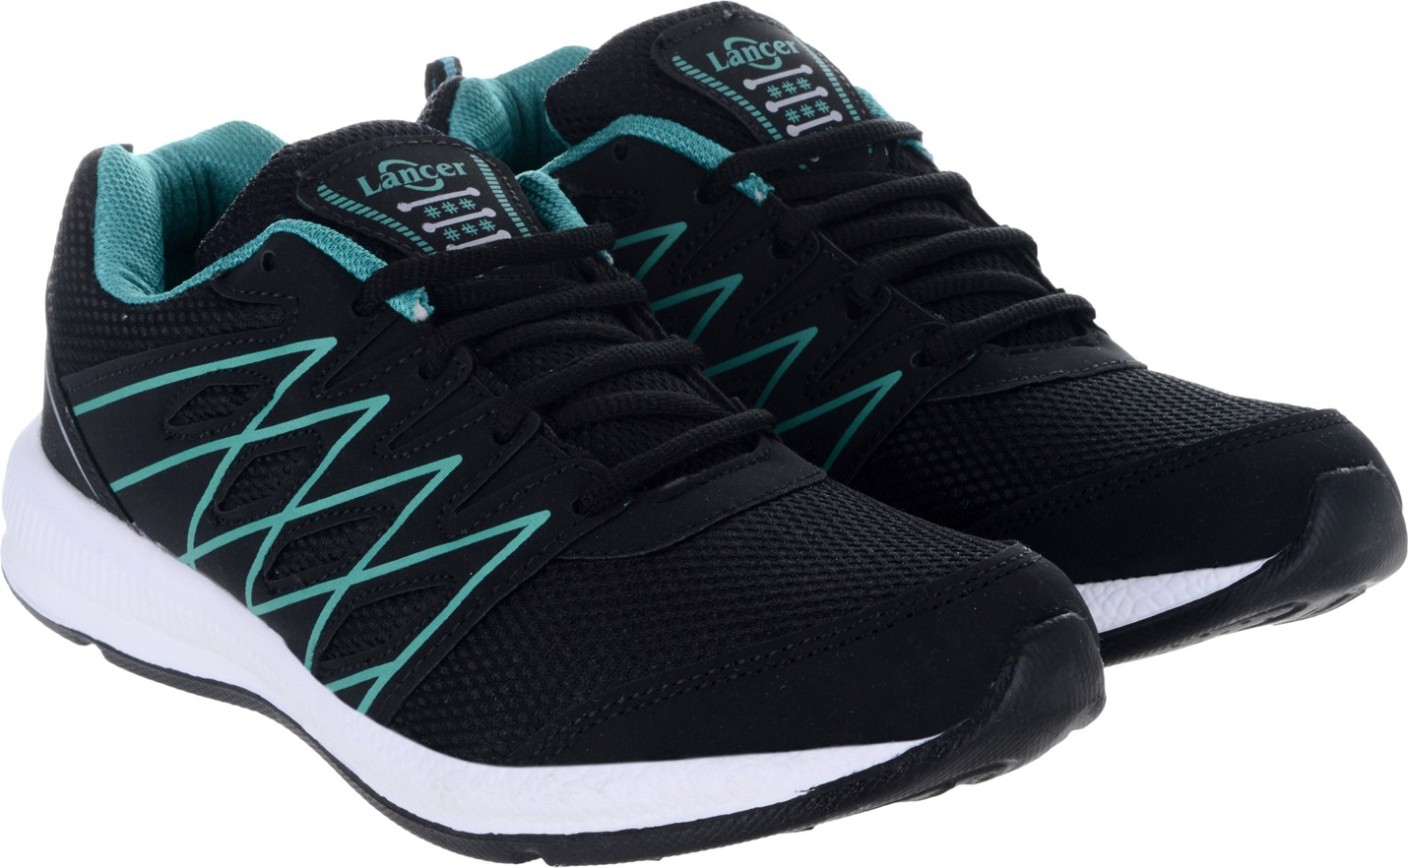 Lancer Running Shoes For Men - Buy Black Color Lancer Running Shoes For ...